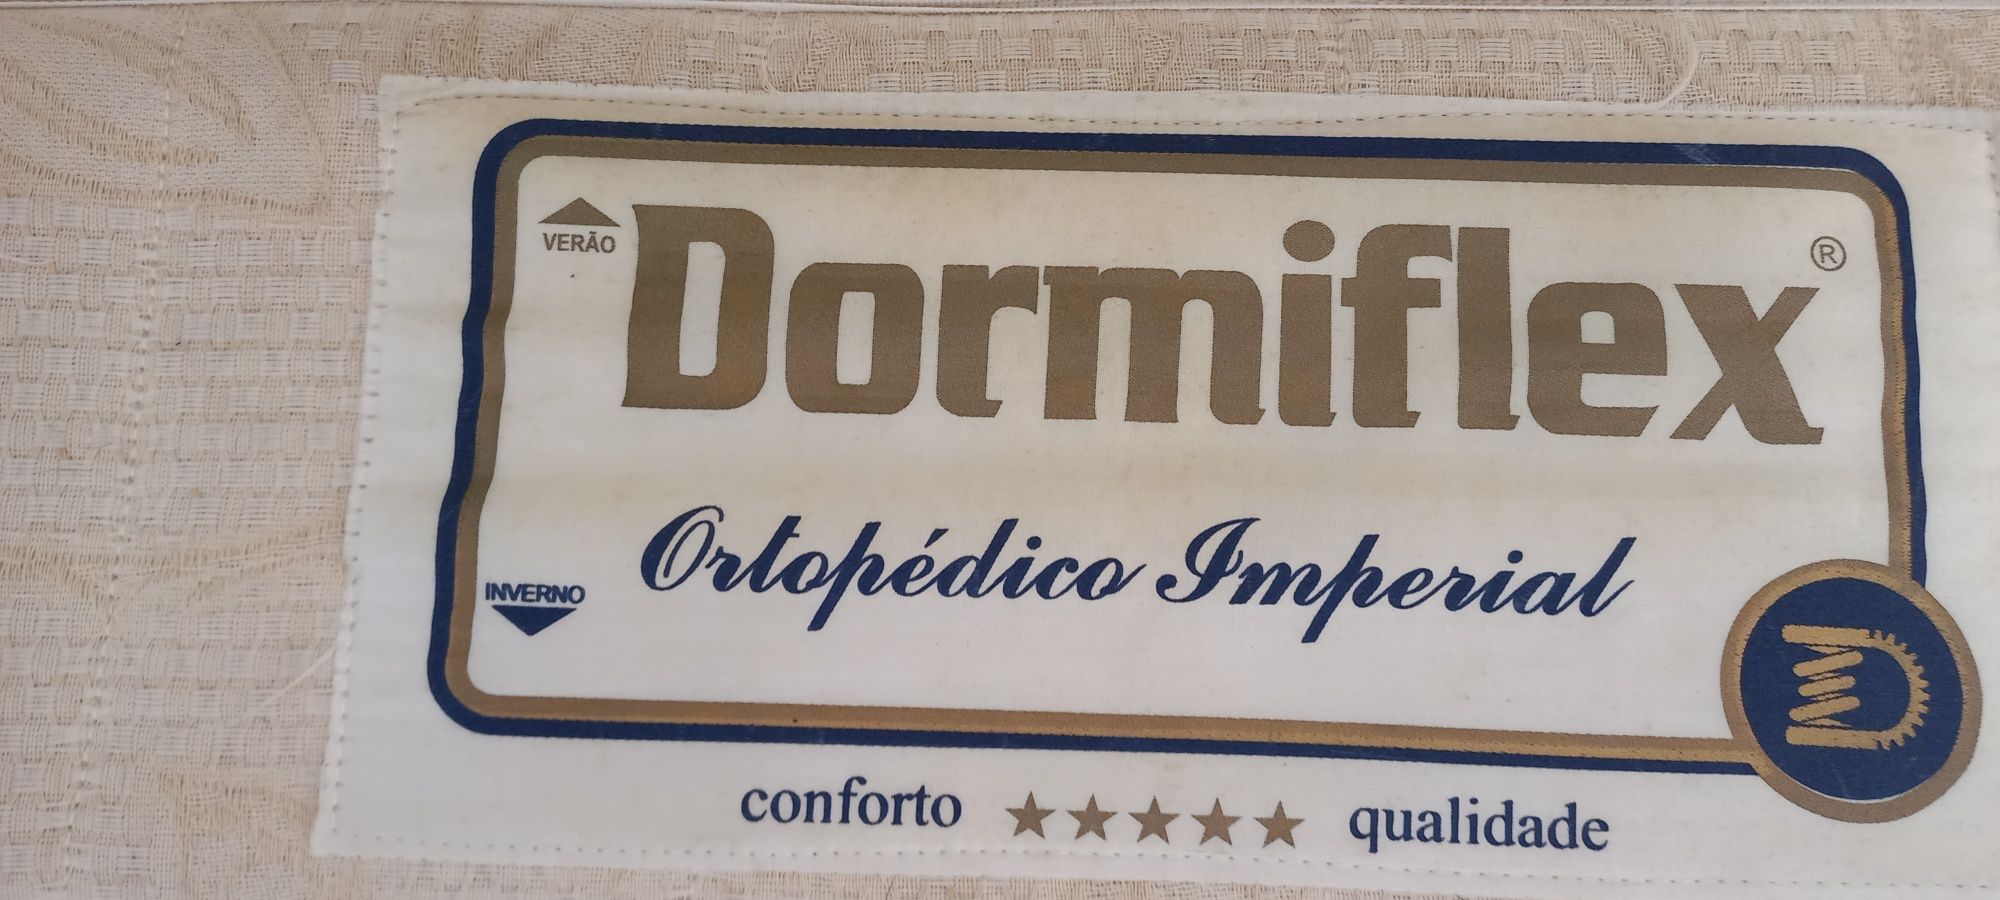 Colchão Dormiflex ortopedico Baixa de preço!!!160×200